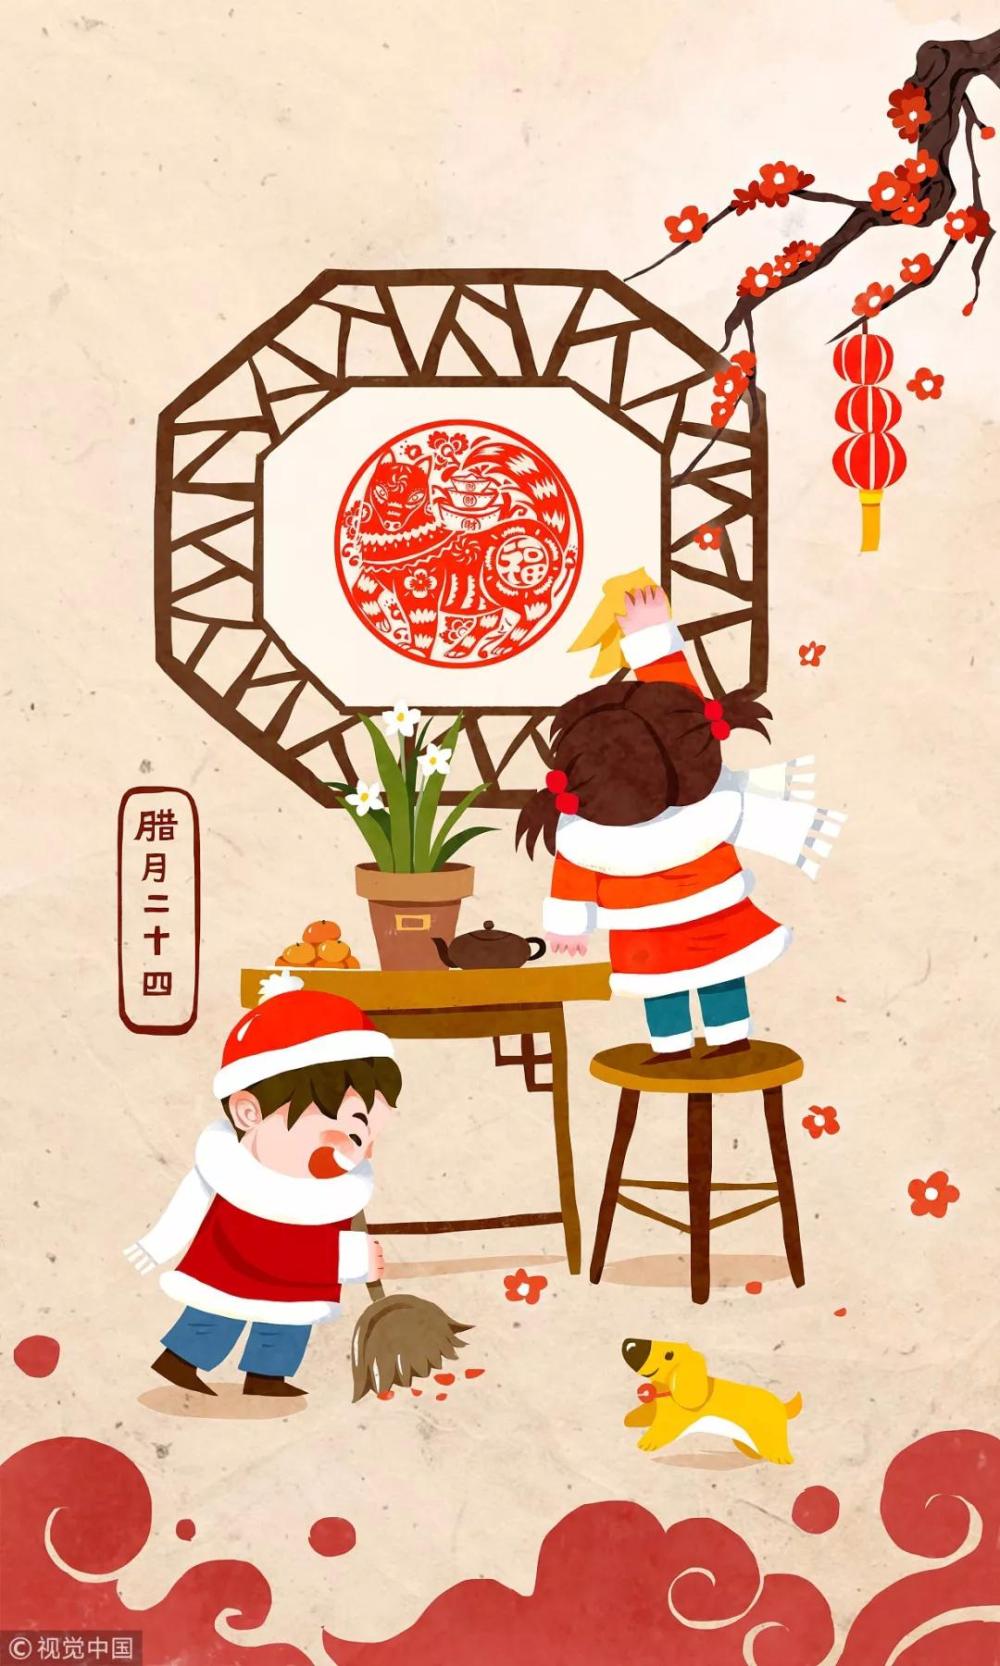 糖瓜祭灶 新年来到 | 视觉中国祝大家小年快乐!